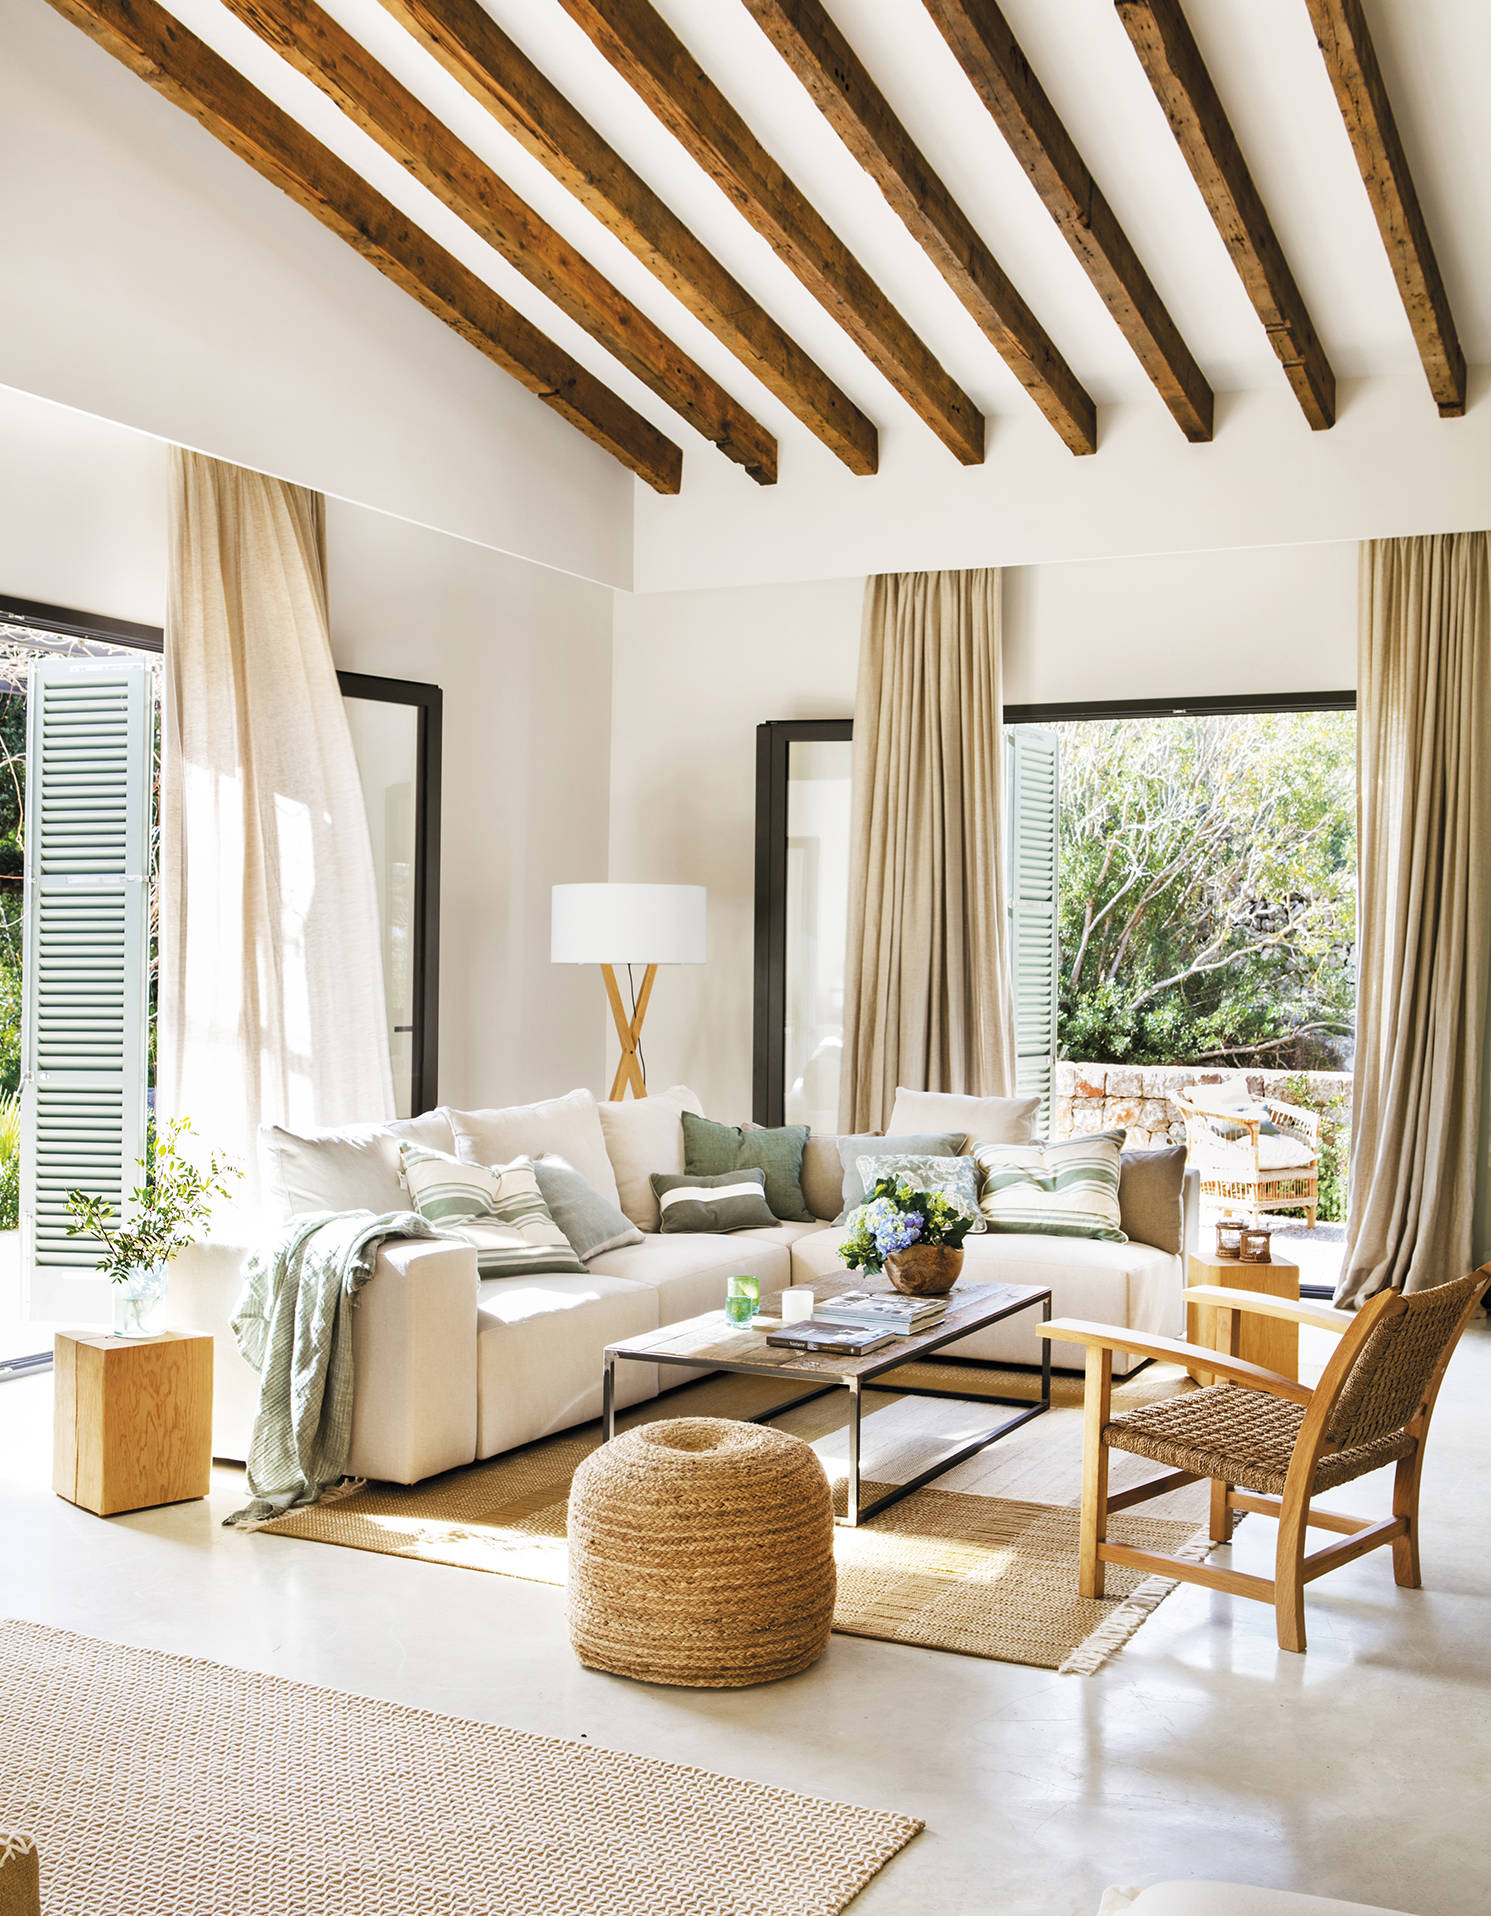 Salón de verano con sofá rinconera blanco, puf y alfombra de yute, butaca de madera y mesa de centro de madera y metal.